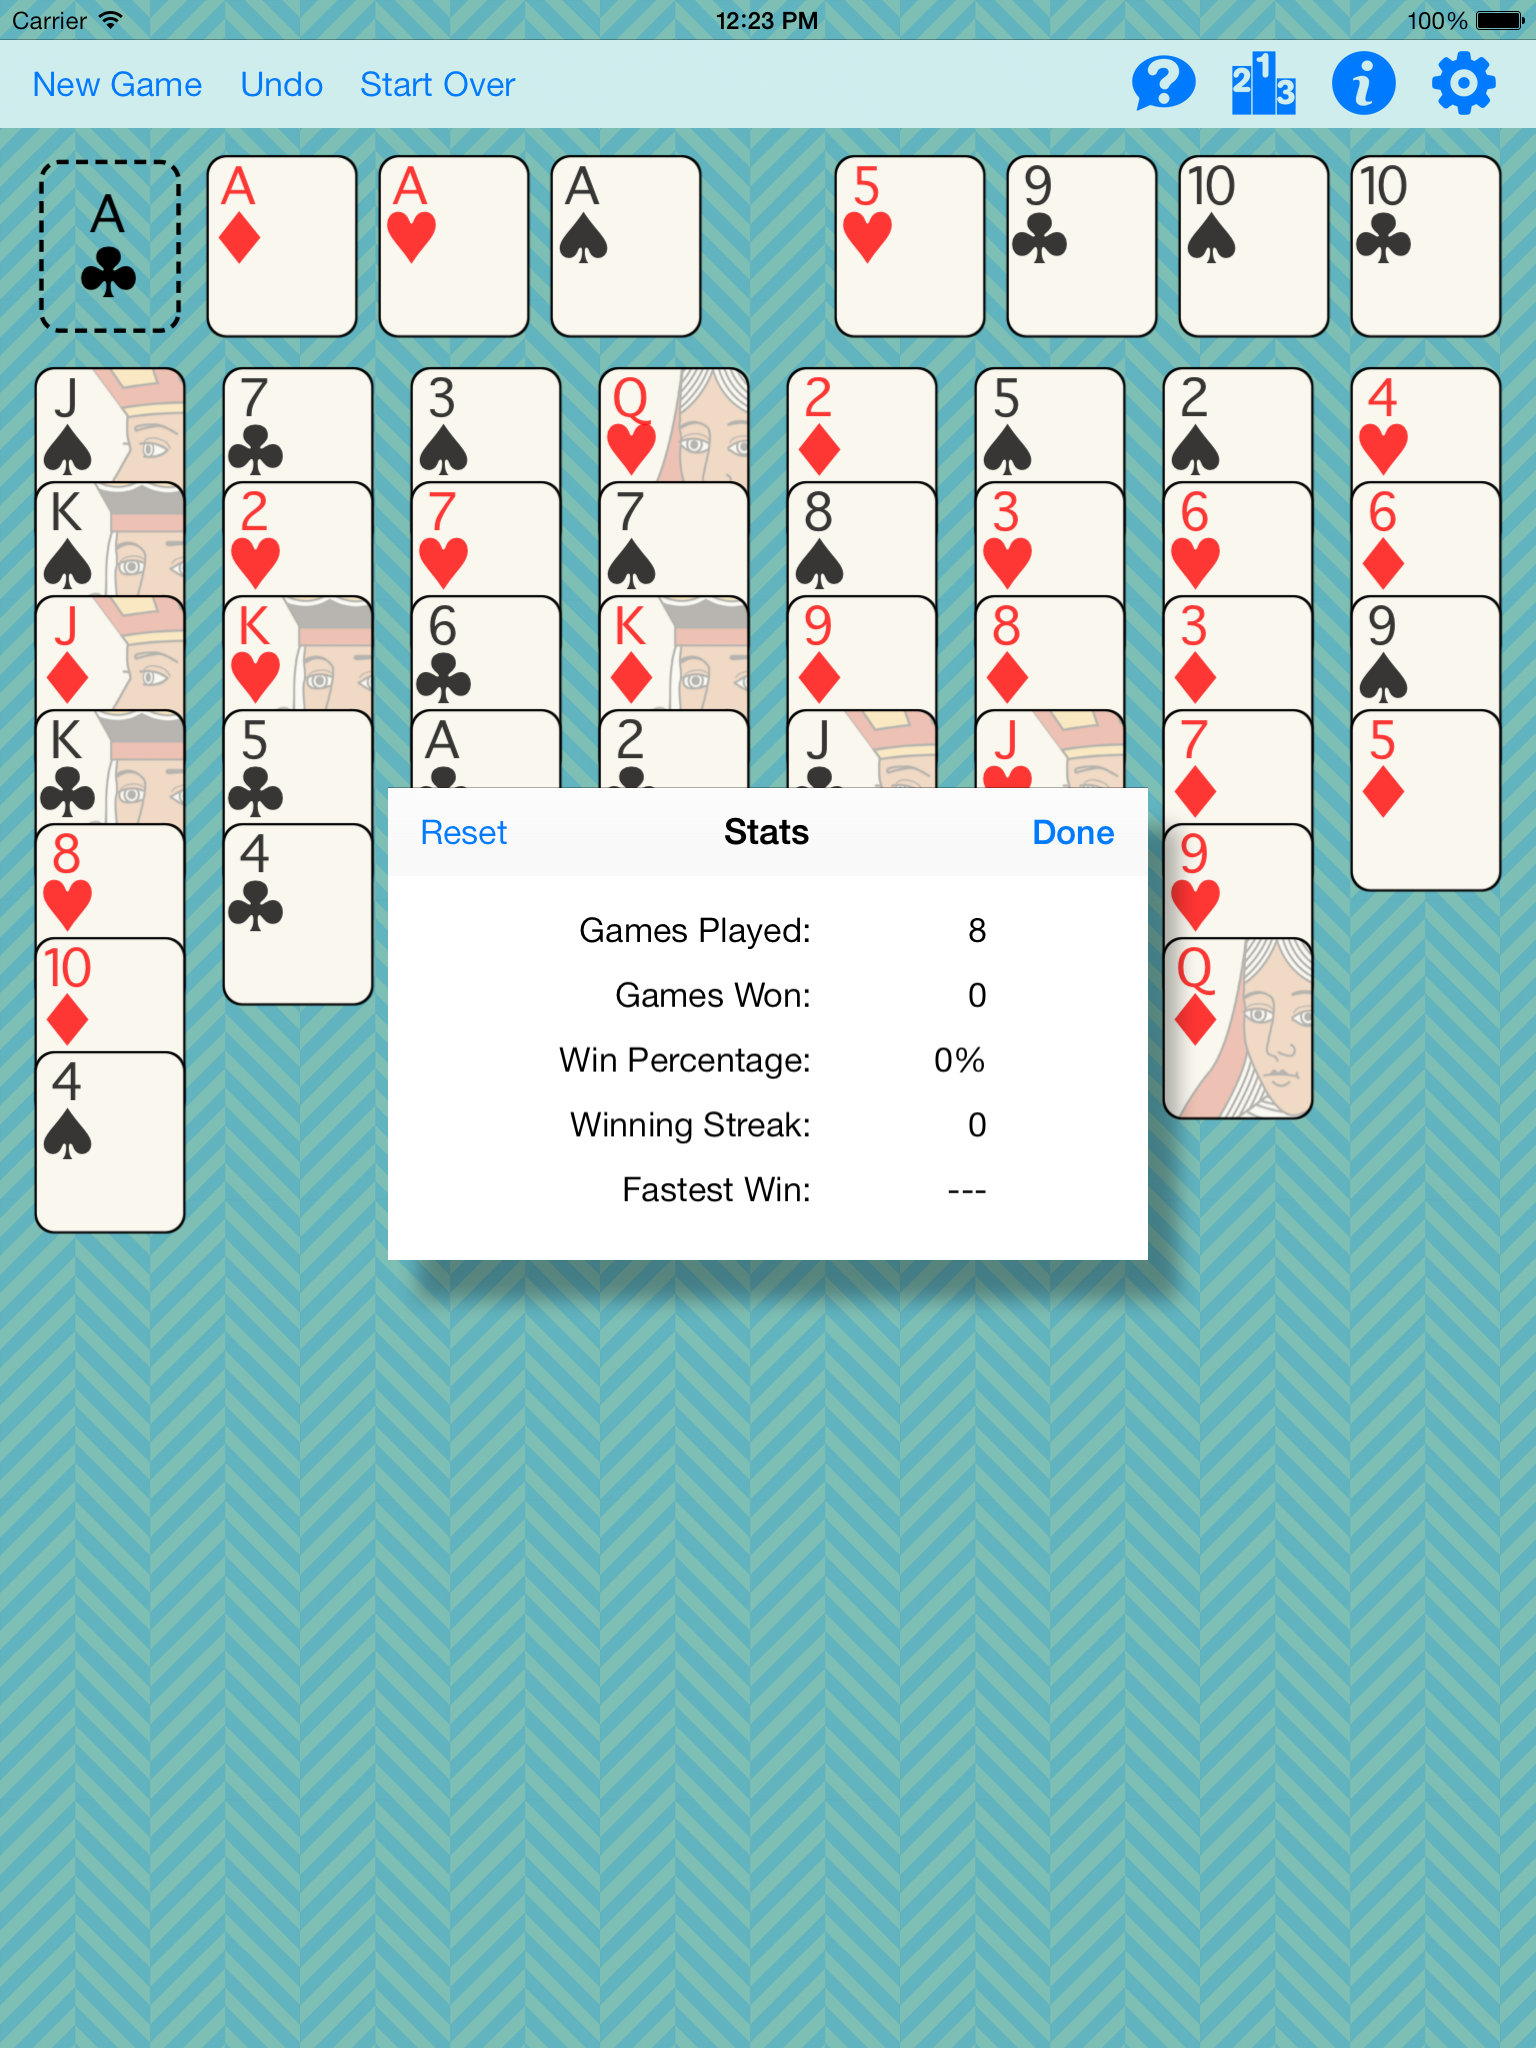 iOS Simulator Screen shot Jan 8, 2014, 12.23.49 PM.png